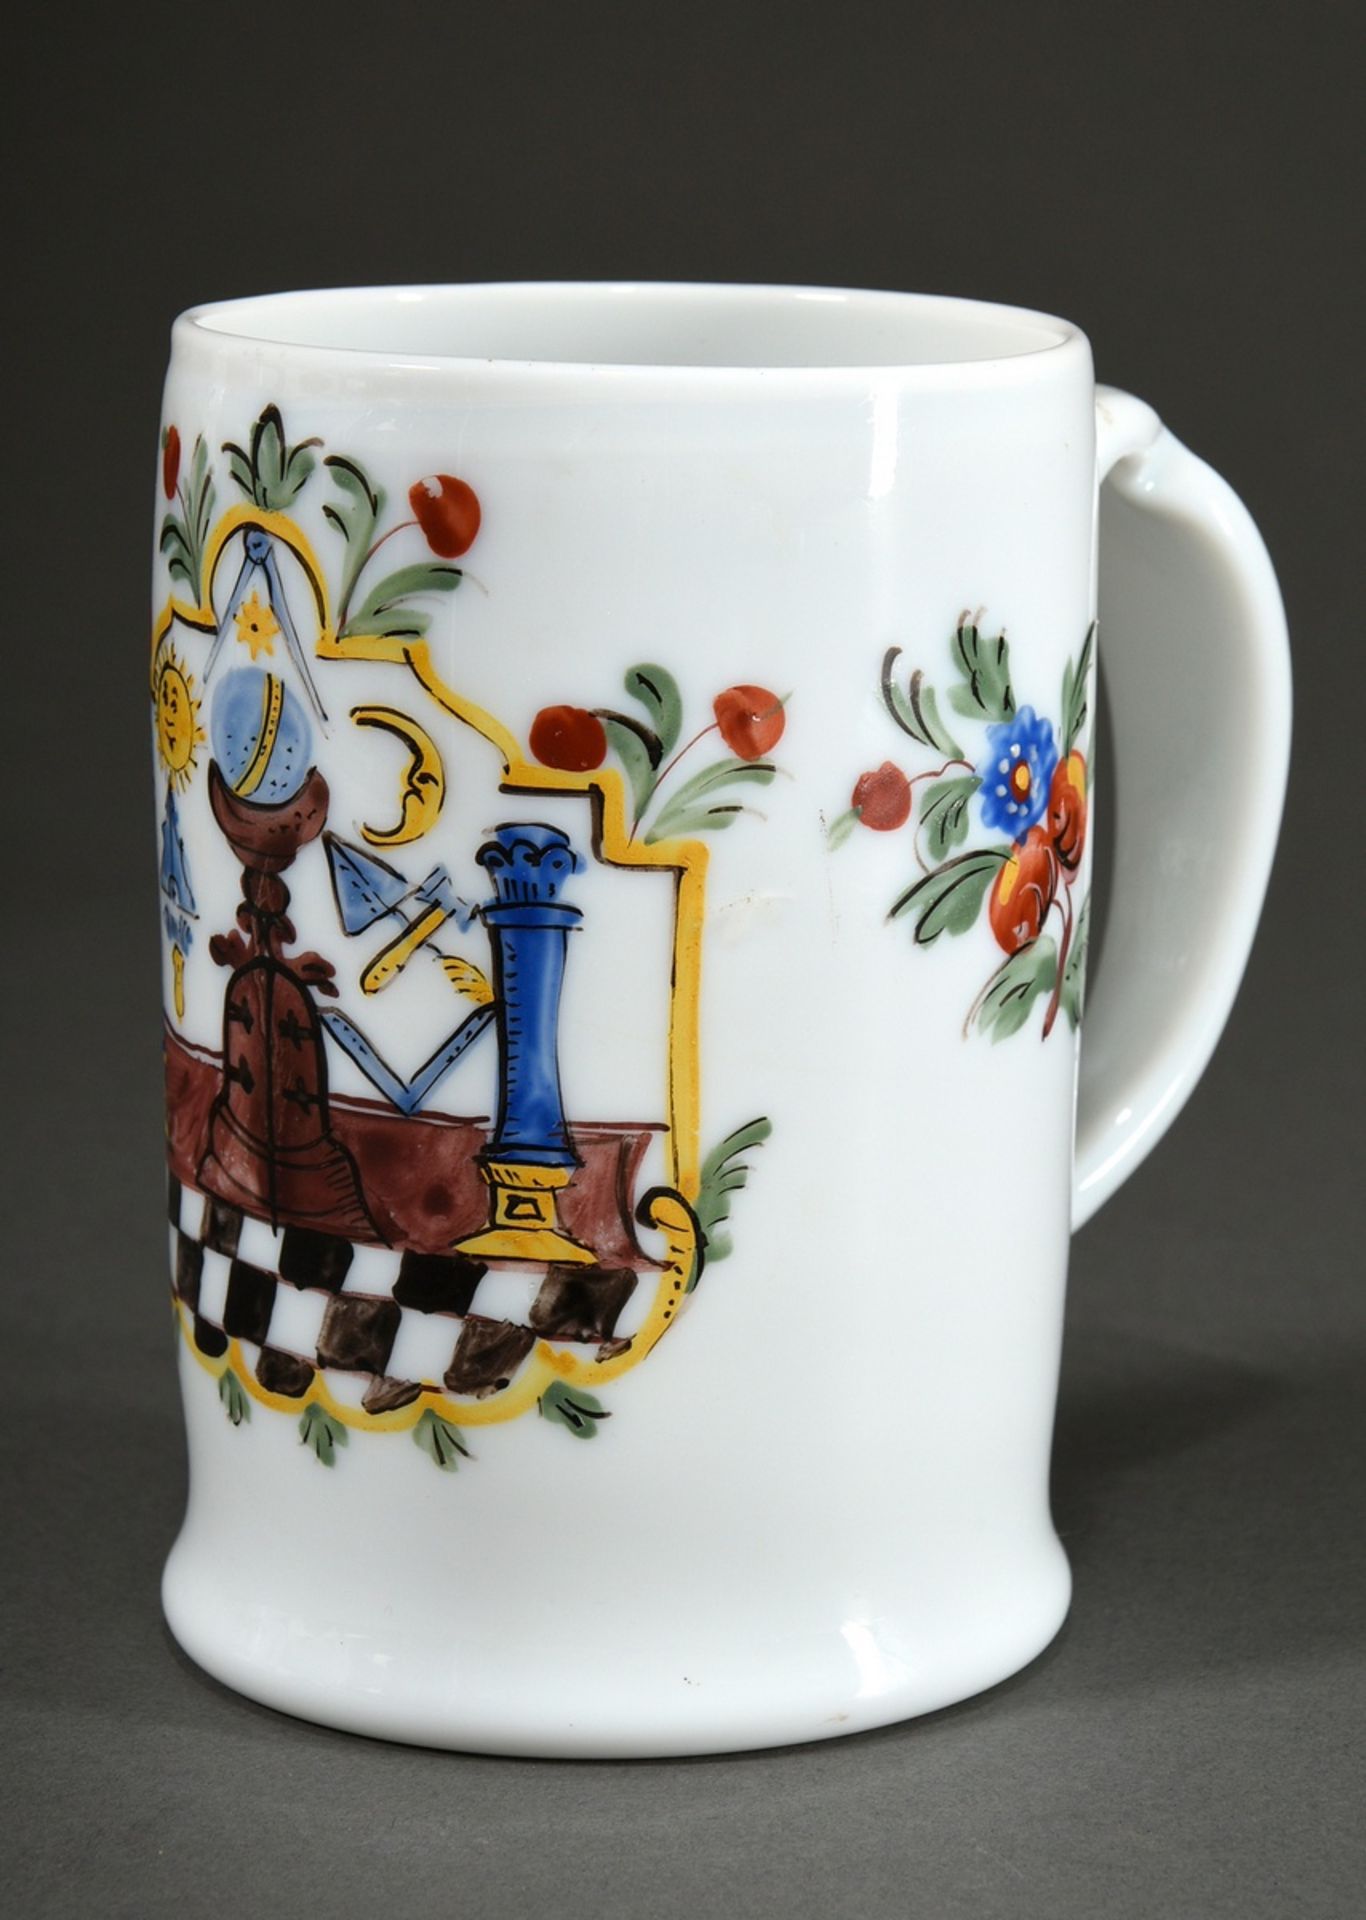 Freimaurer Milchglas Walzenkrug mit farbiger Emaille Malerei in floral verzierter Kartusche, Bandhe - Bild 2 aus 4